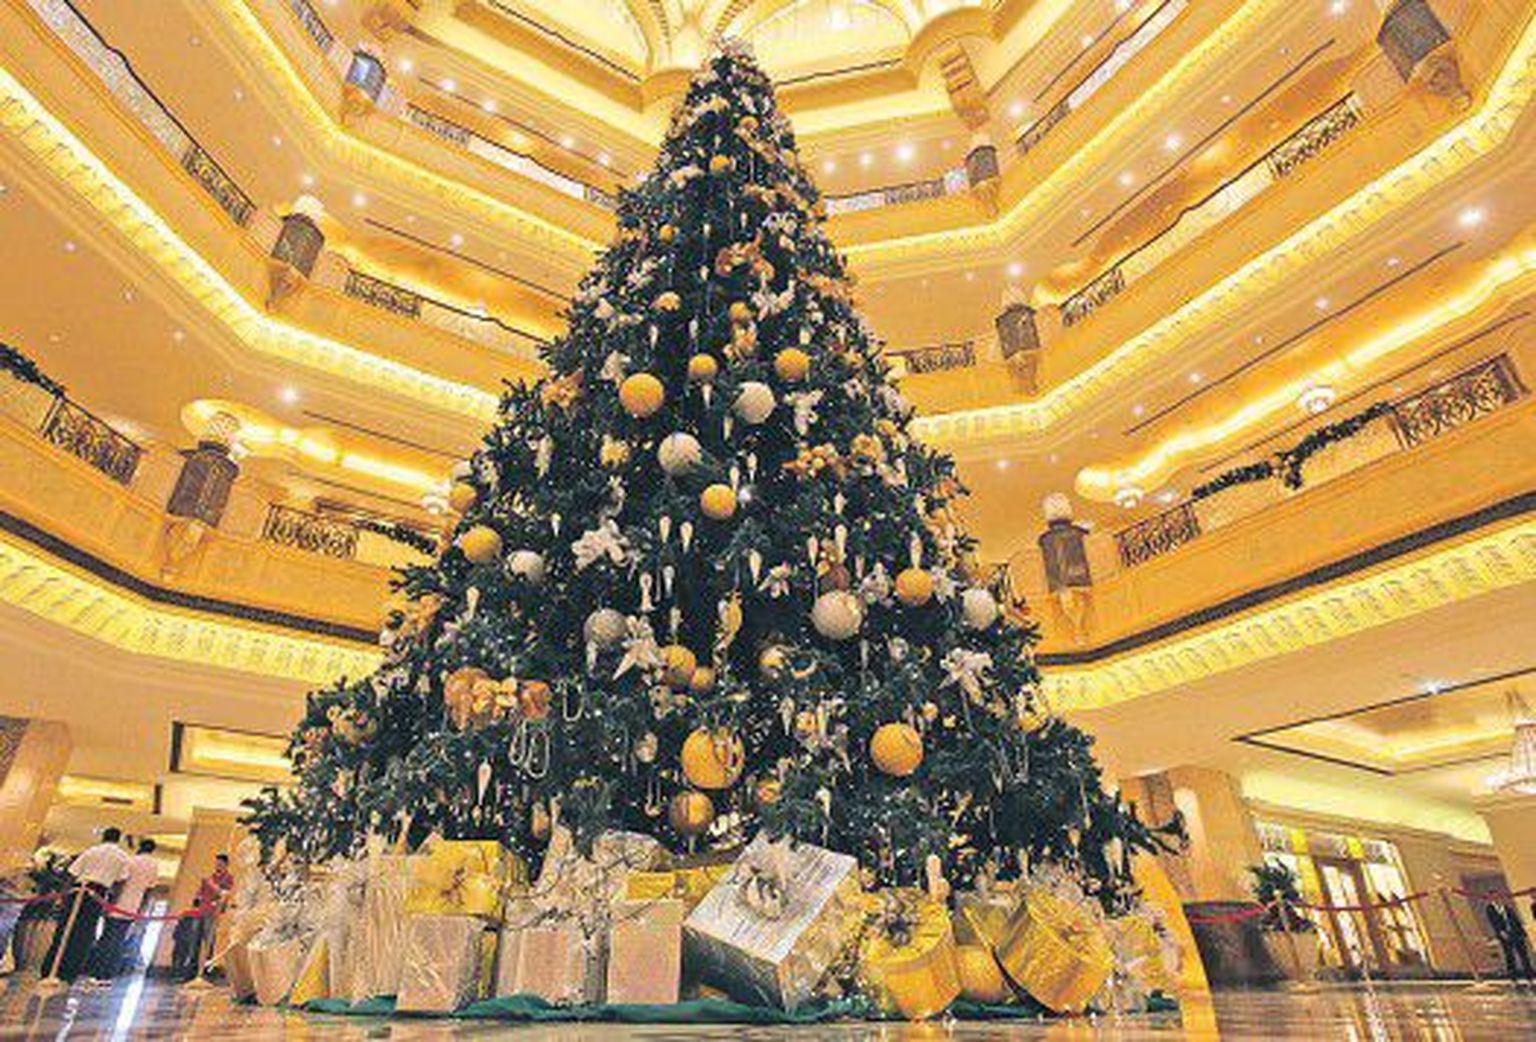 Самая дорогая елка в мире установлена в семизвездочном отеле «Emirates Palace» в Абу-Даби: стоимость самого дерева составляет 10 тысяч долларов, а цена украшений, сделанных из золота и драгоценных камней, превышает 11 миллионов долларов.